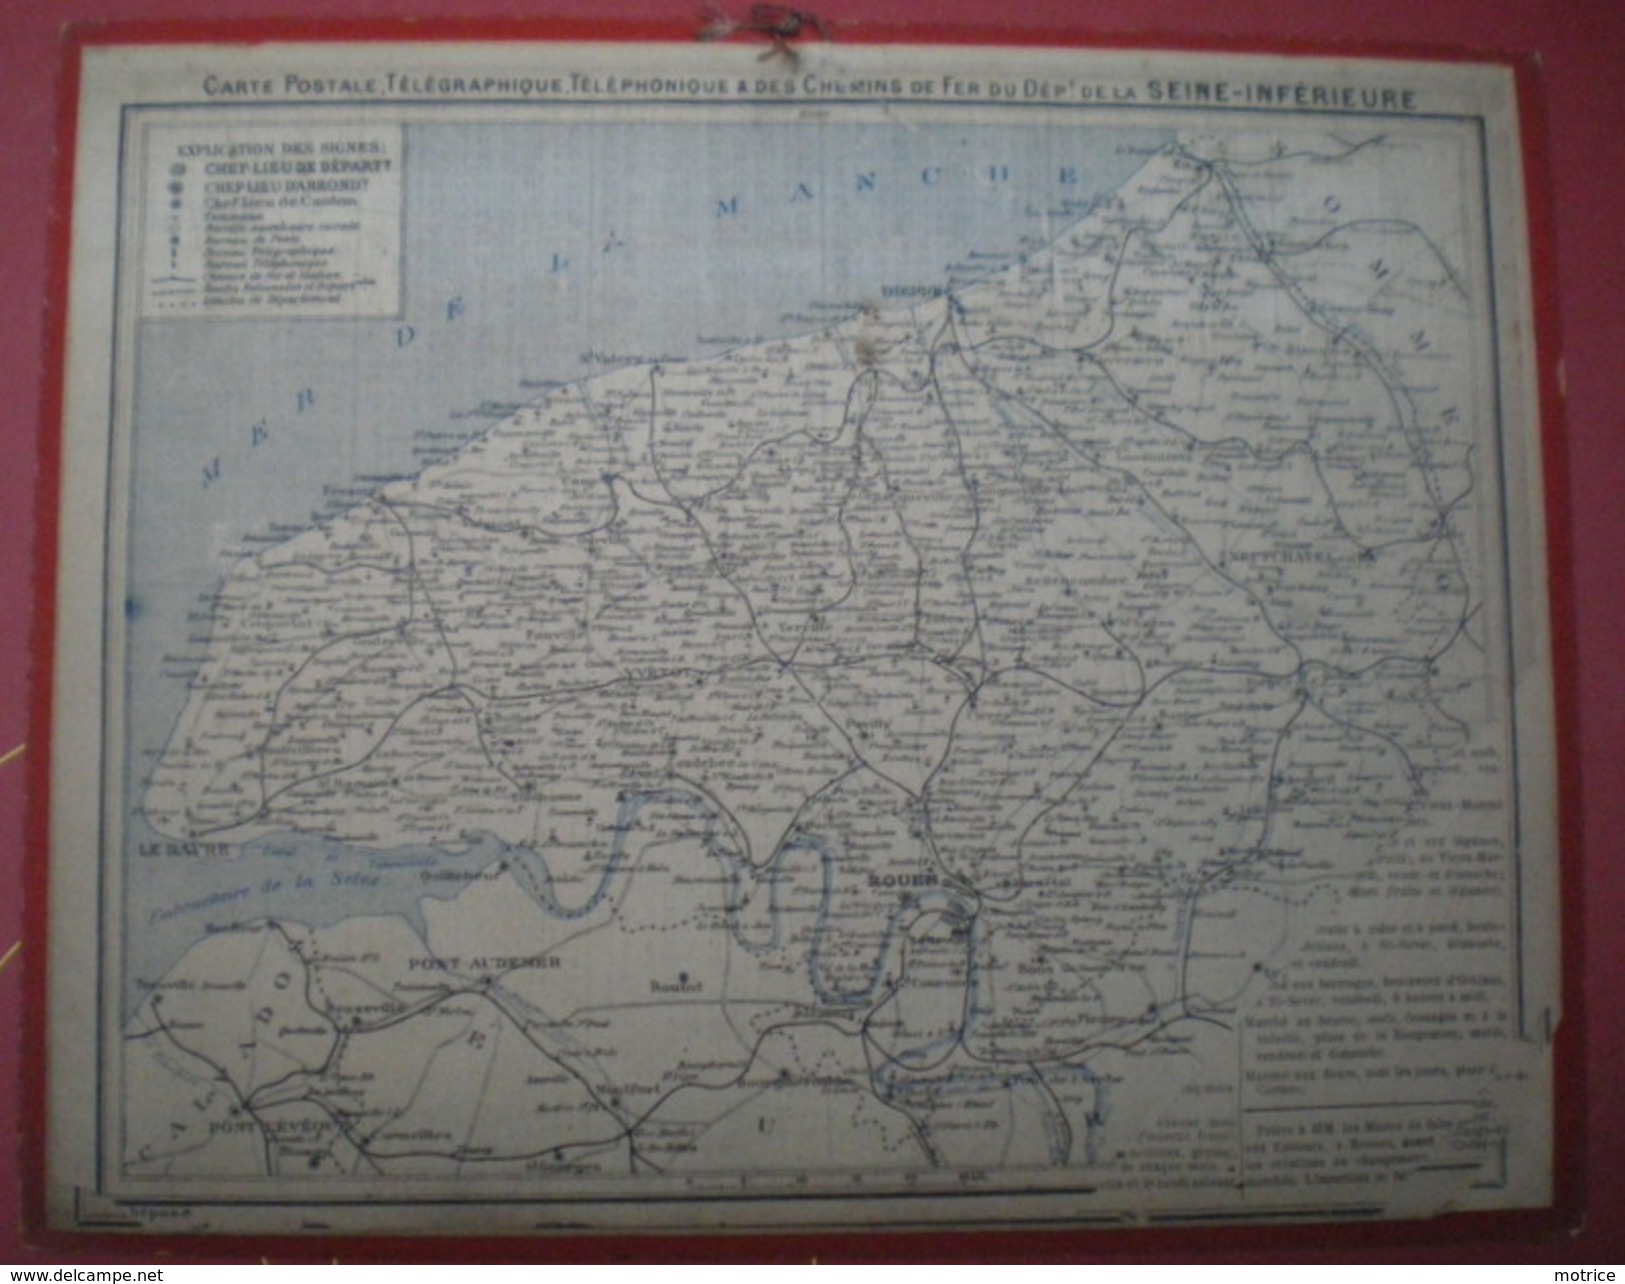 ALMANACH DES POSTES ET DES TÉLÉGRAPHES  1923 - Village Alsacien. - Grand Format : 1921-40